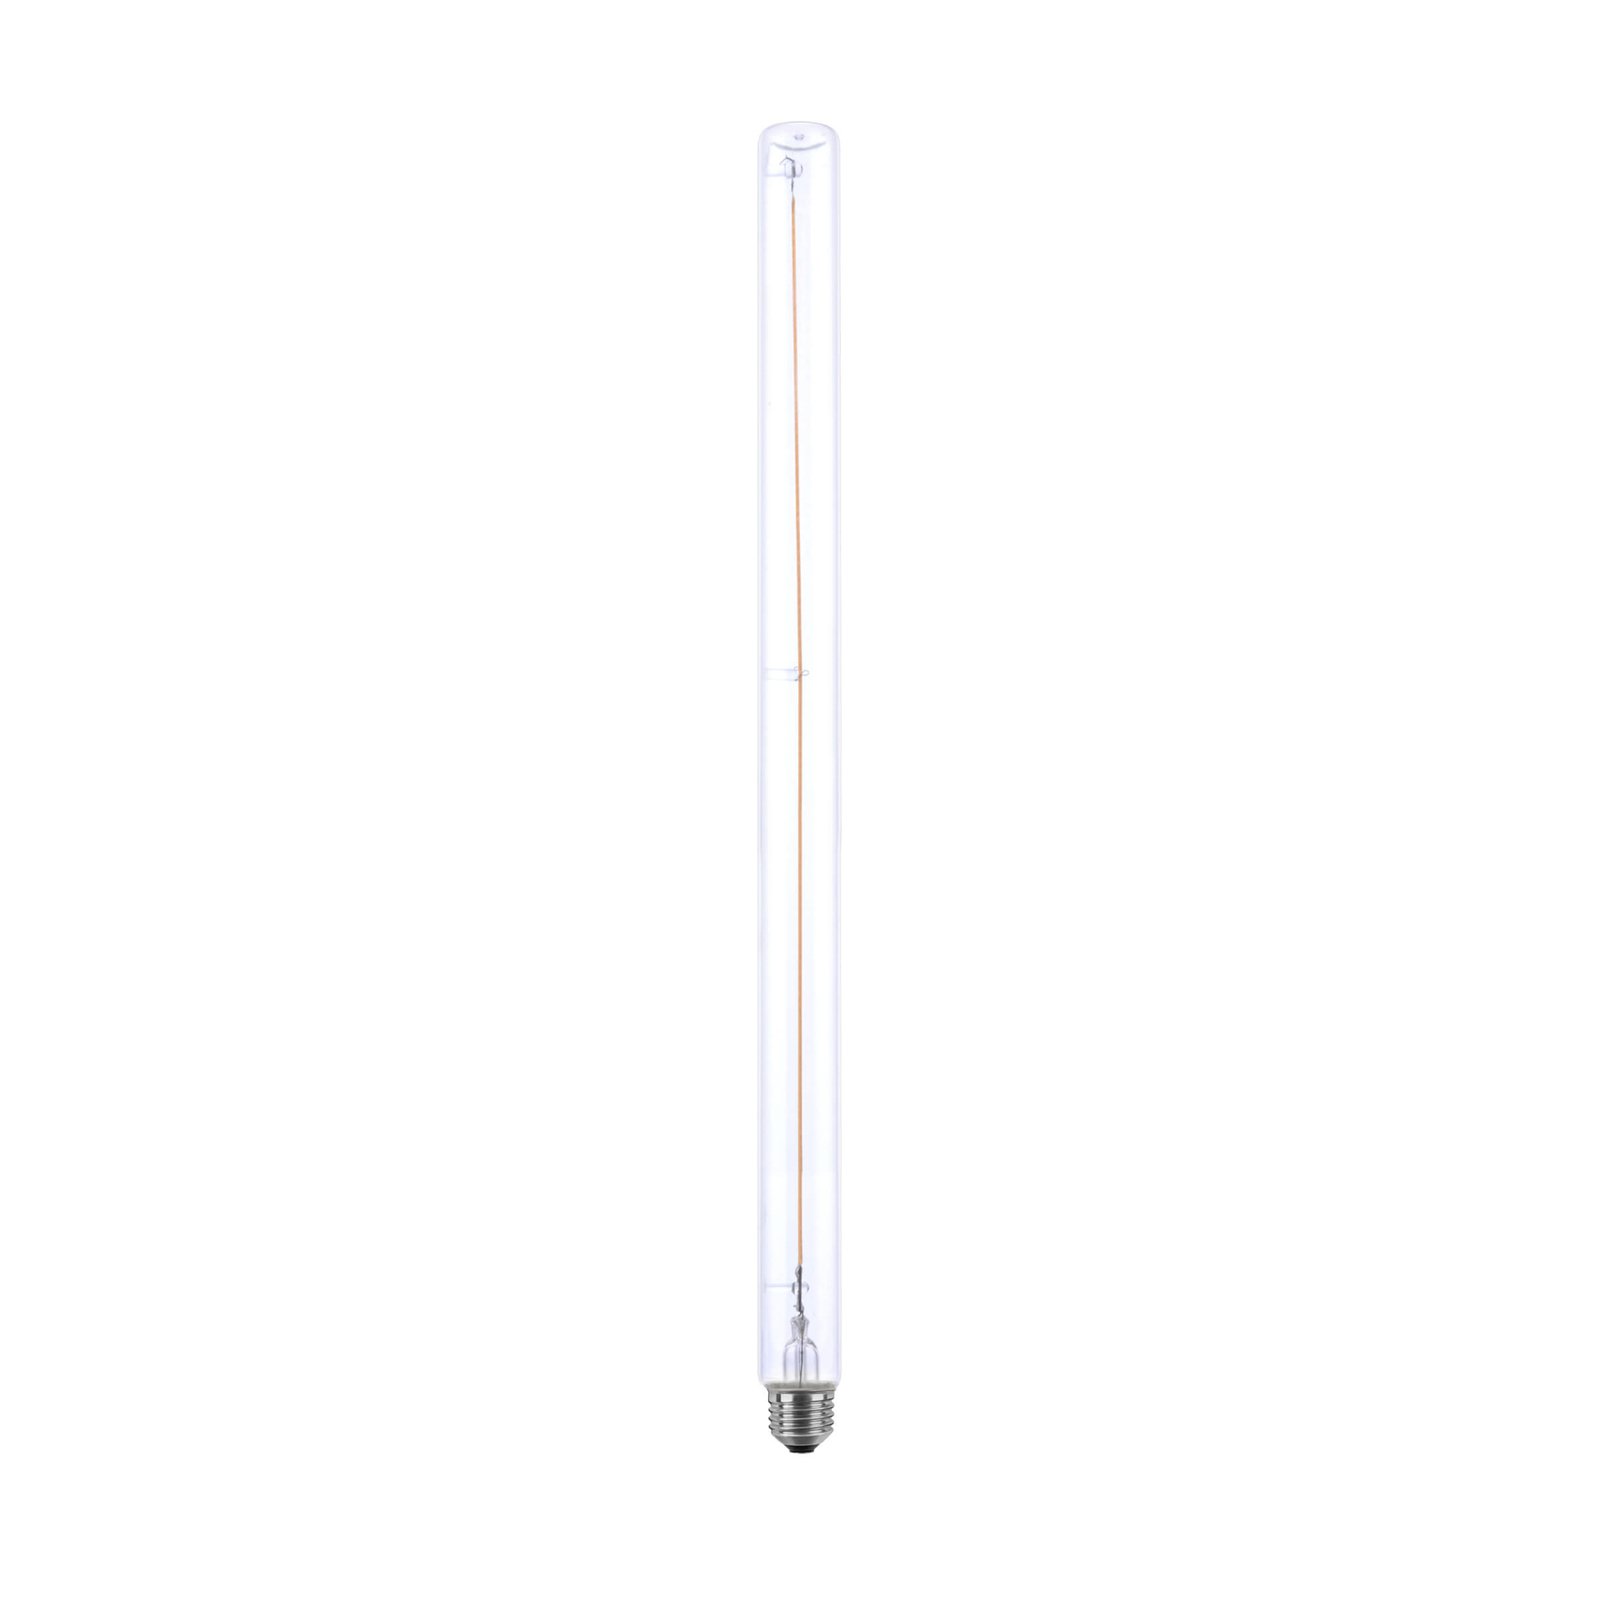 SEGULA Soft LED tubo 500 E27 6,2W 927 claro dim